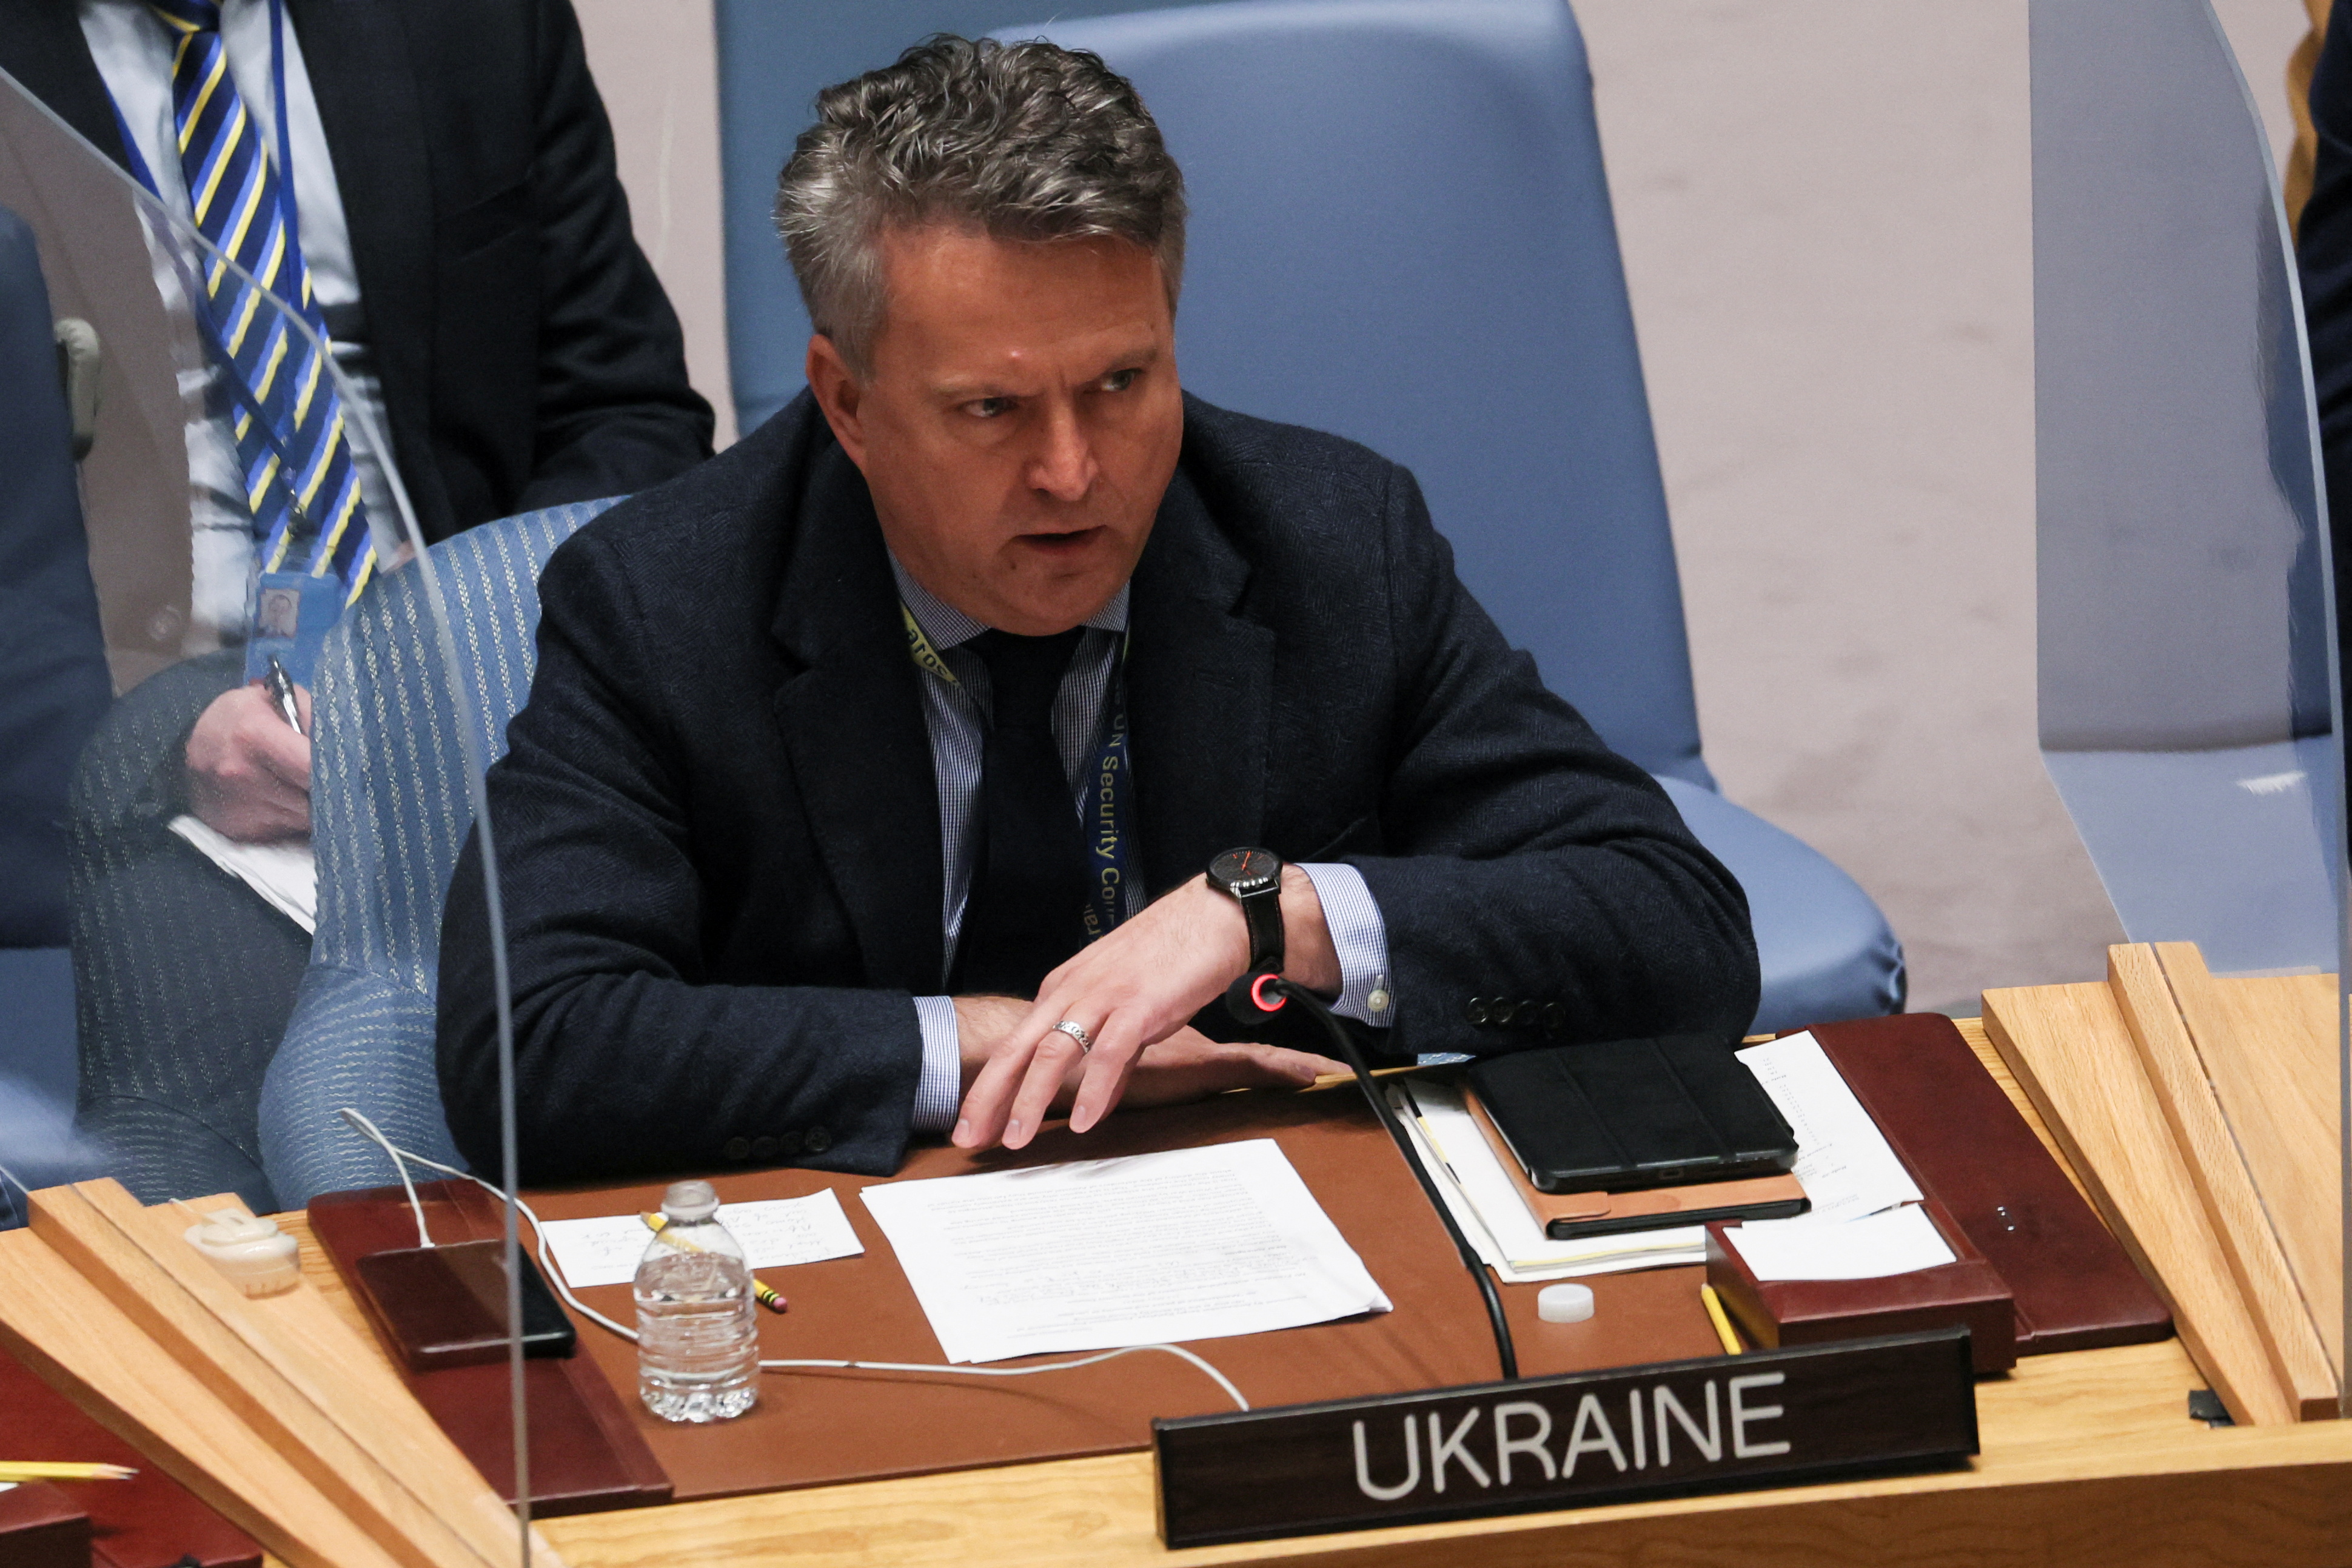 FOTO DE ARCHIVO: El embajador de Ucrania ante las Naciones Unidas, Sergiy Kyslytsya, lee una declaración durante una reunión del Consejo de Seguridad de las Naciones Unidas para discutir la invasión rusa de Ucrania en la sede de la ONU en Nueva York, Estados Unidos, el 12 de mayo de 2022. REUTERS/Mike Segar